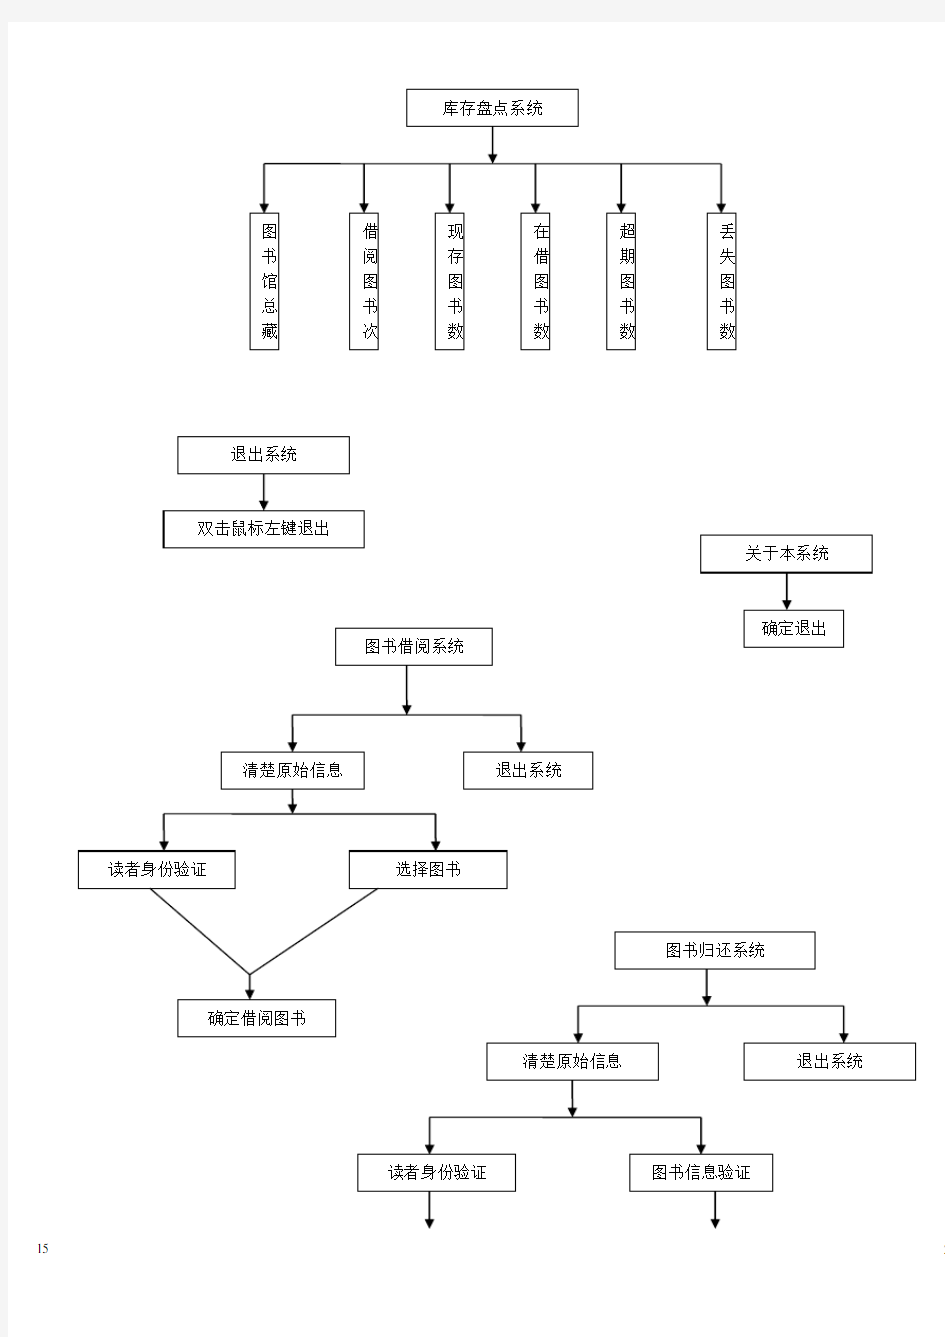 图书馆管理系统结构图